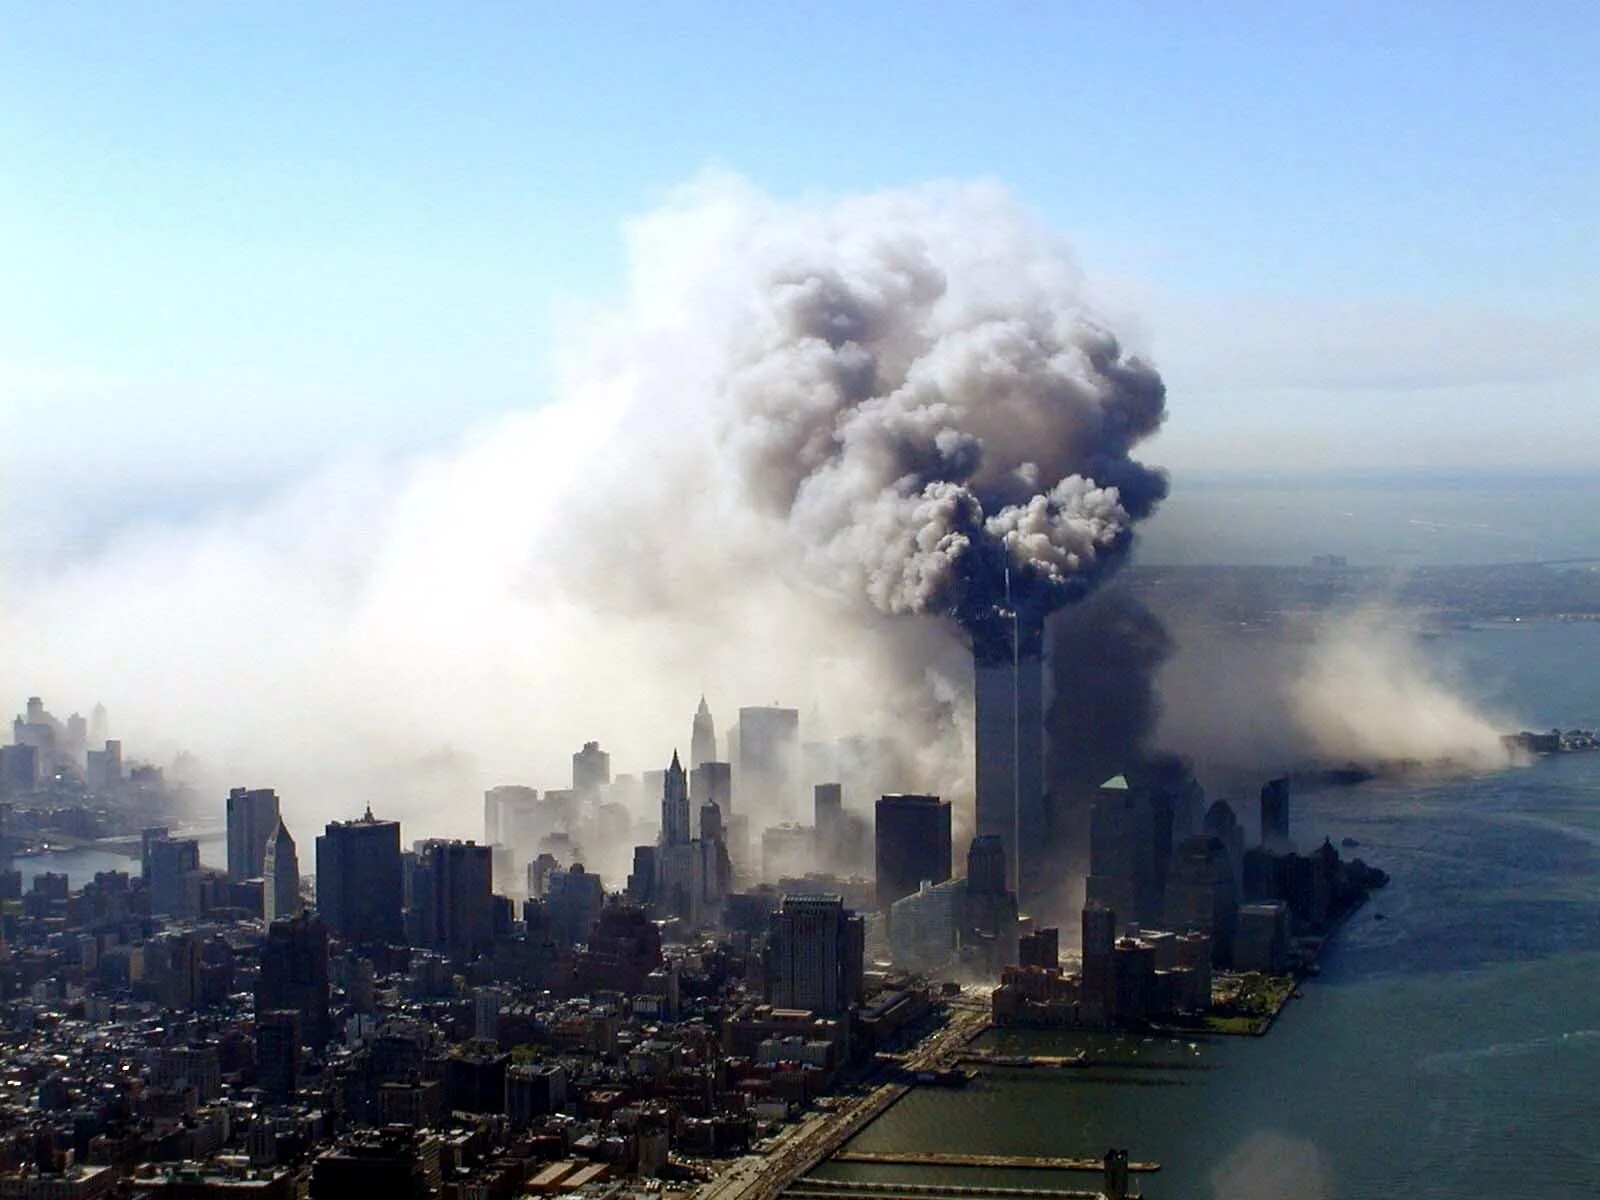 Разговор 11 сентября. Башни Близнецы 11 сентября. Нью-Йорк, Манхэттен, 11 сентября 2001 года.